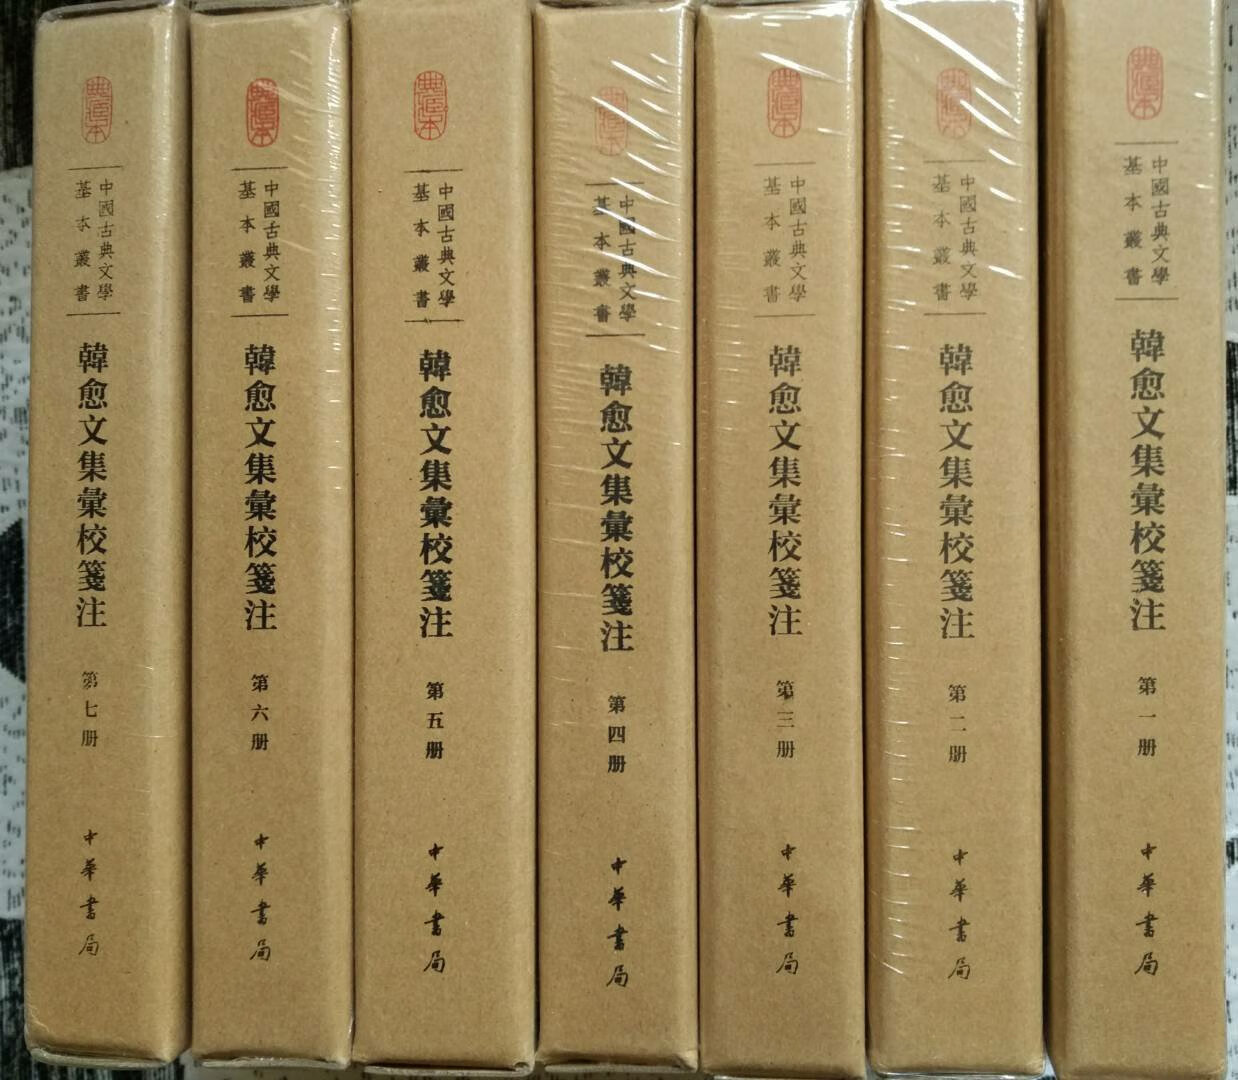 最喜欢中华书局中国古典文学典藏本布面精装的装帧，快收全了！